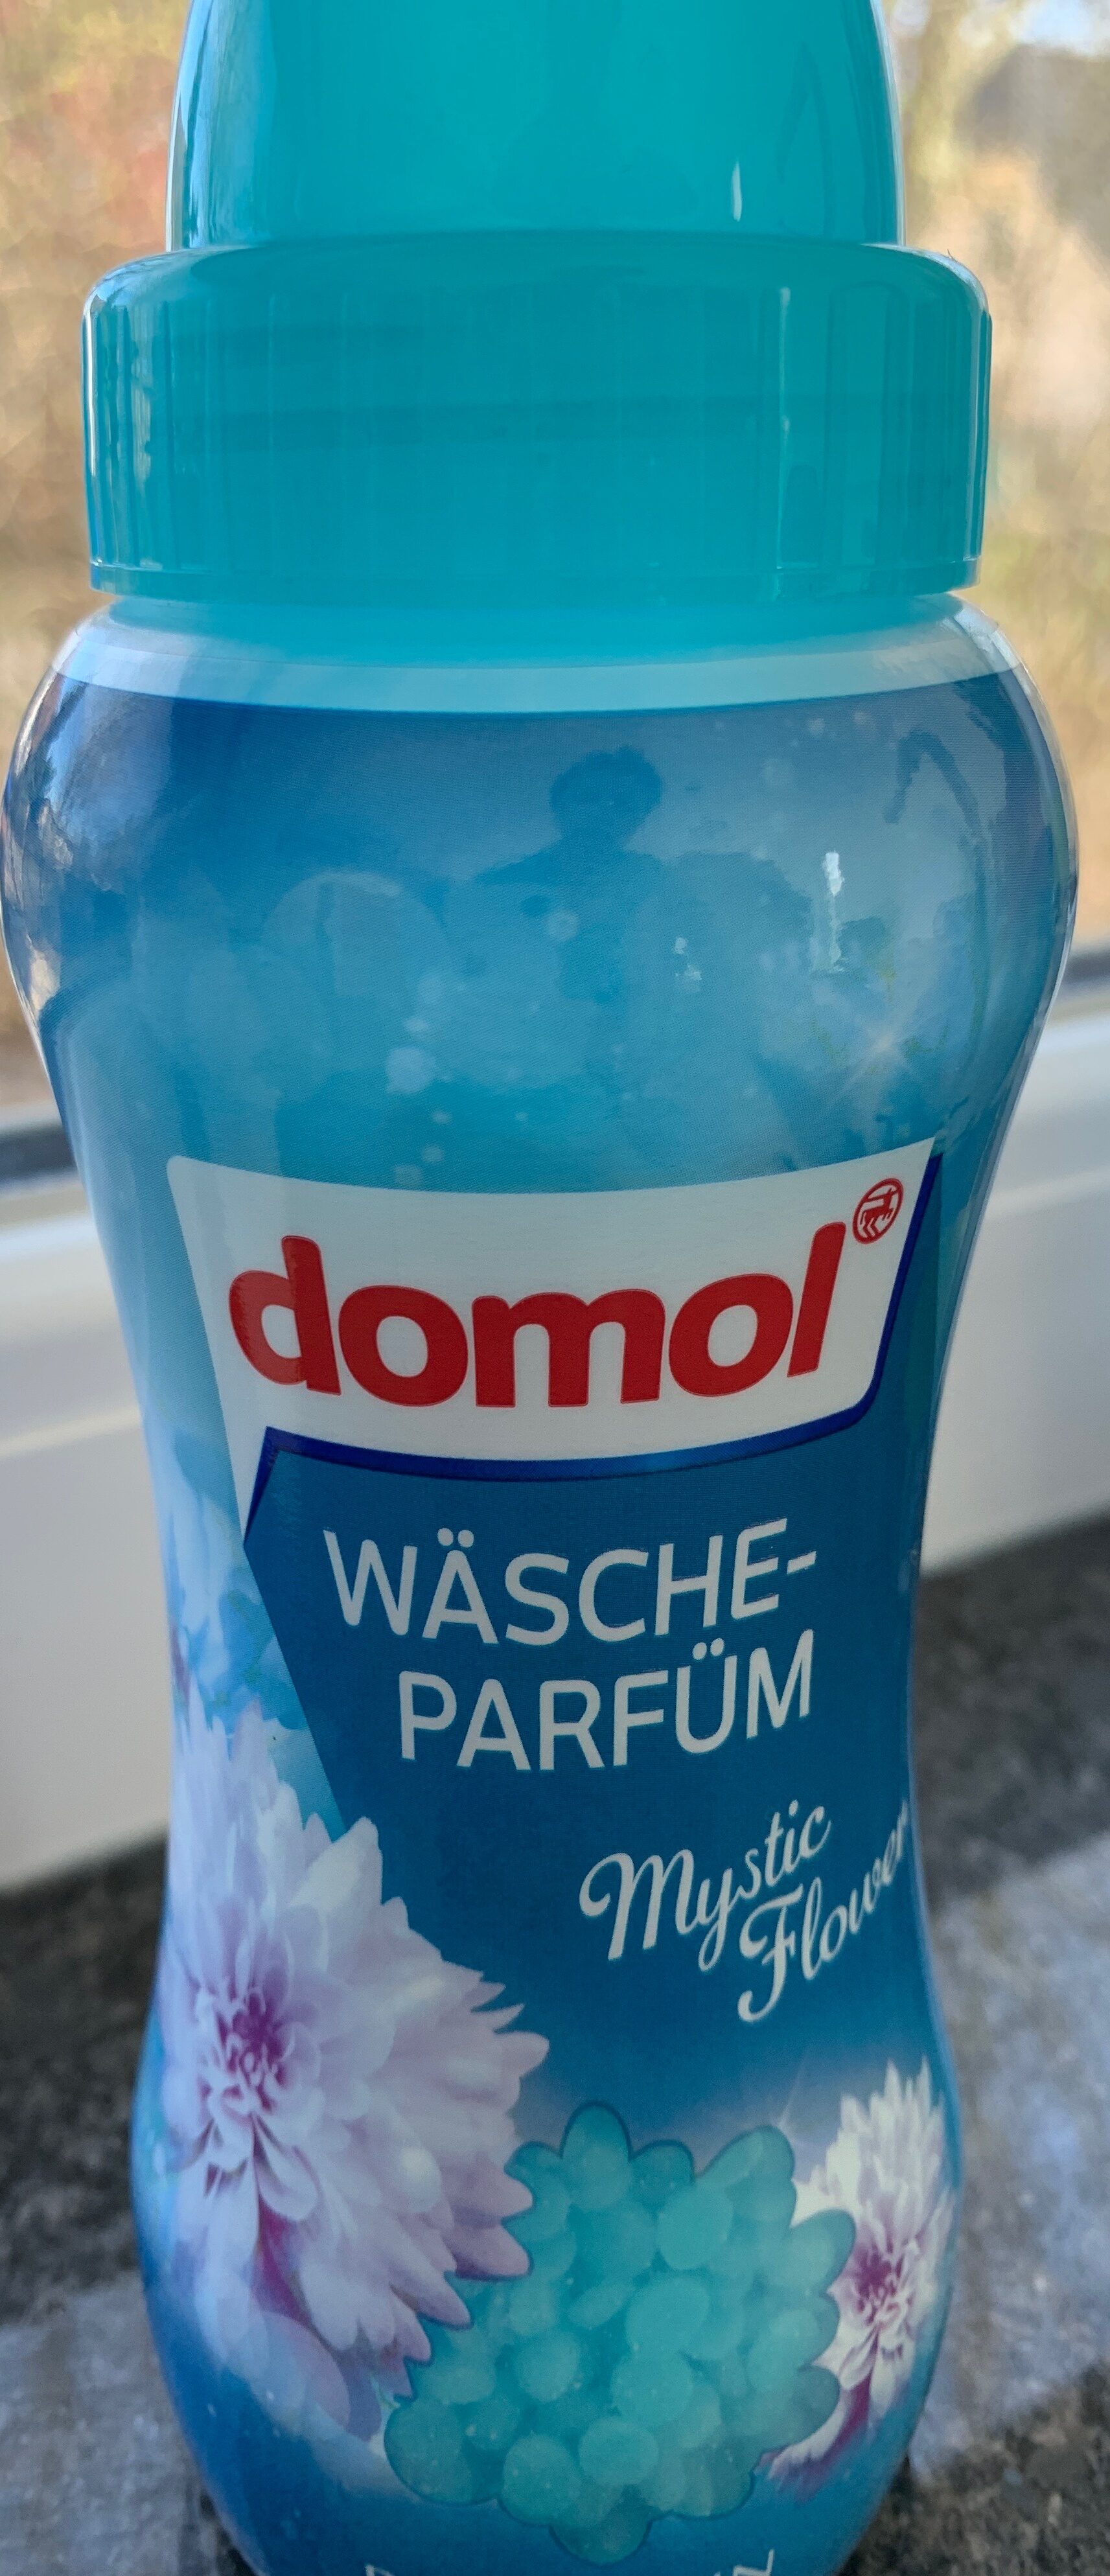 Wäsche-Parfüm - Product - de